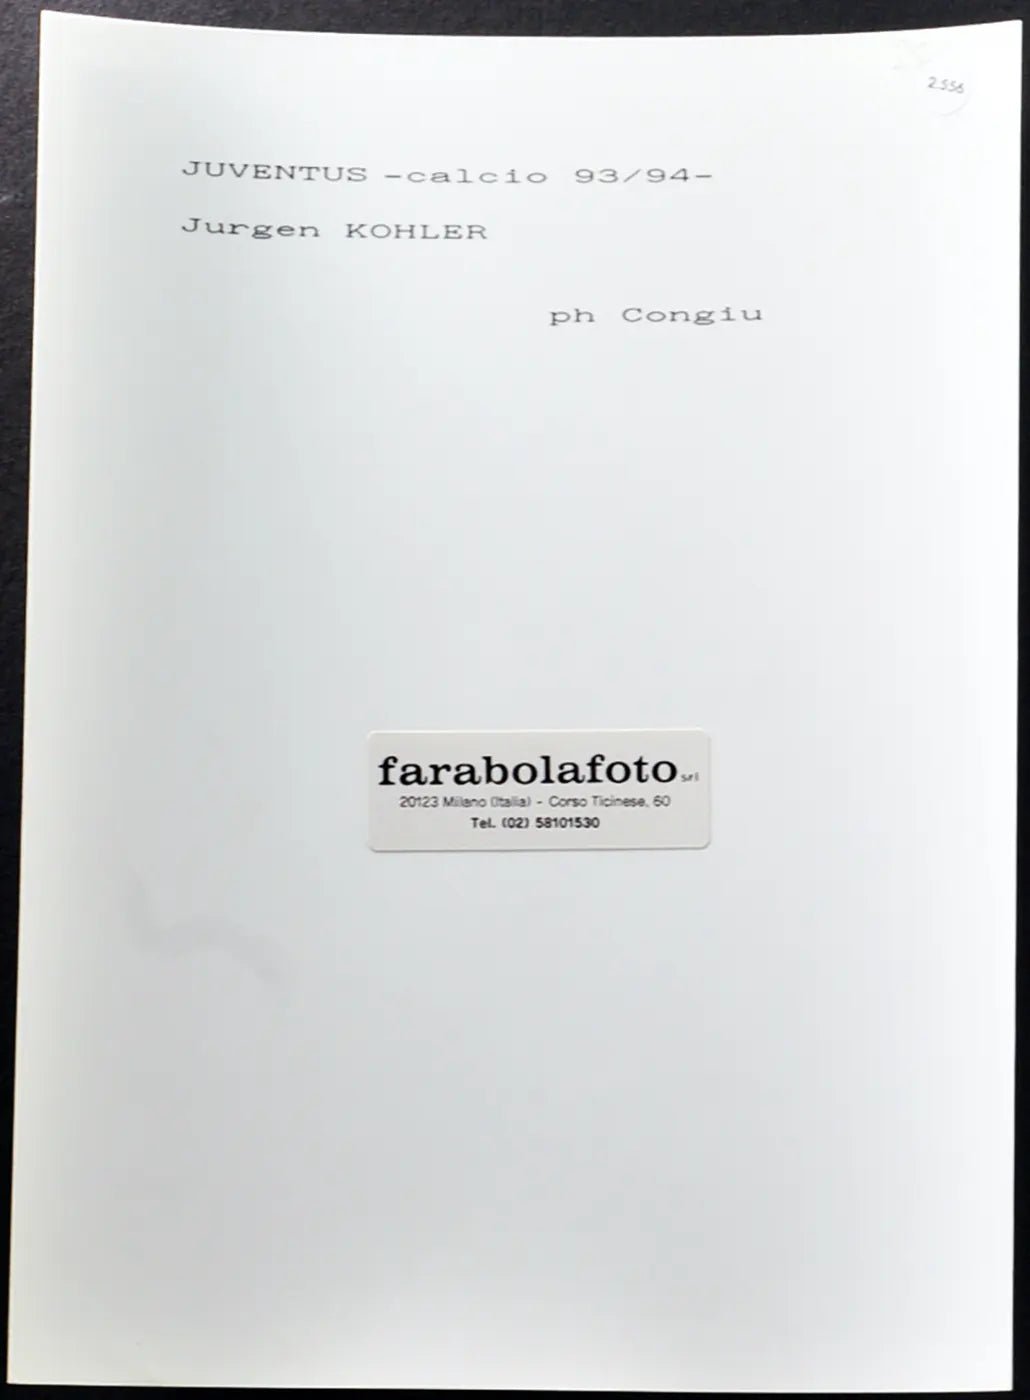 Jurgen Kohler Juventus 1994 Ft 2556 - Stampa 24x18 cm - Farabola Stampa ai sali d'argento